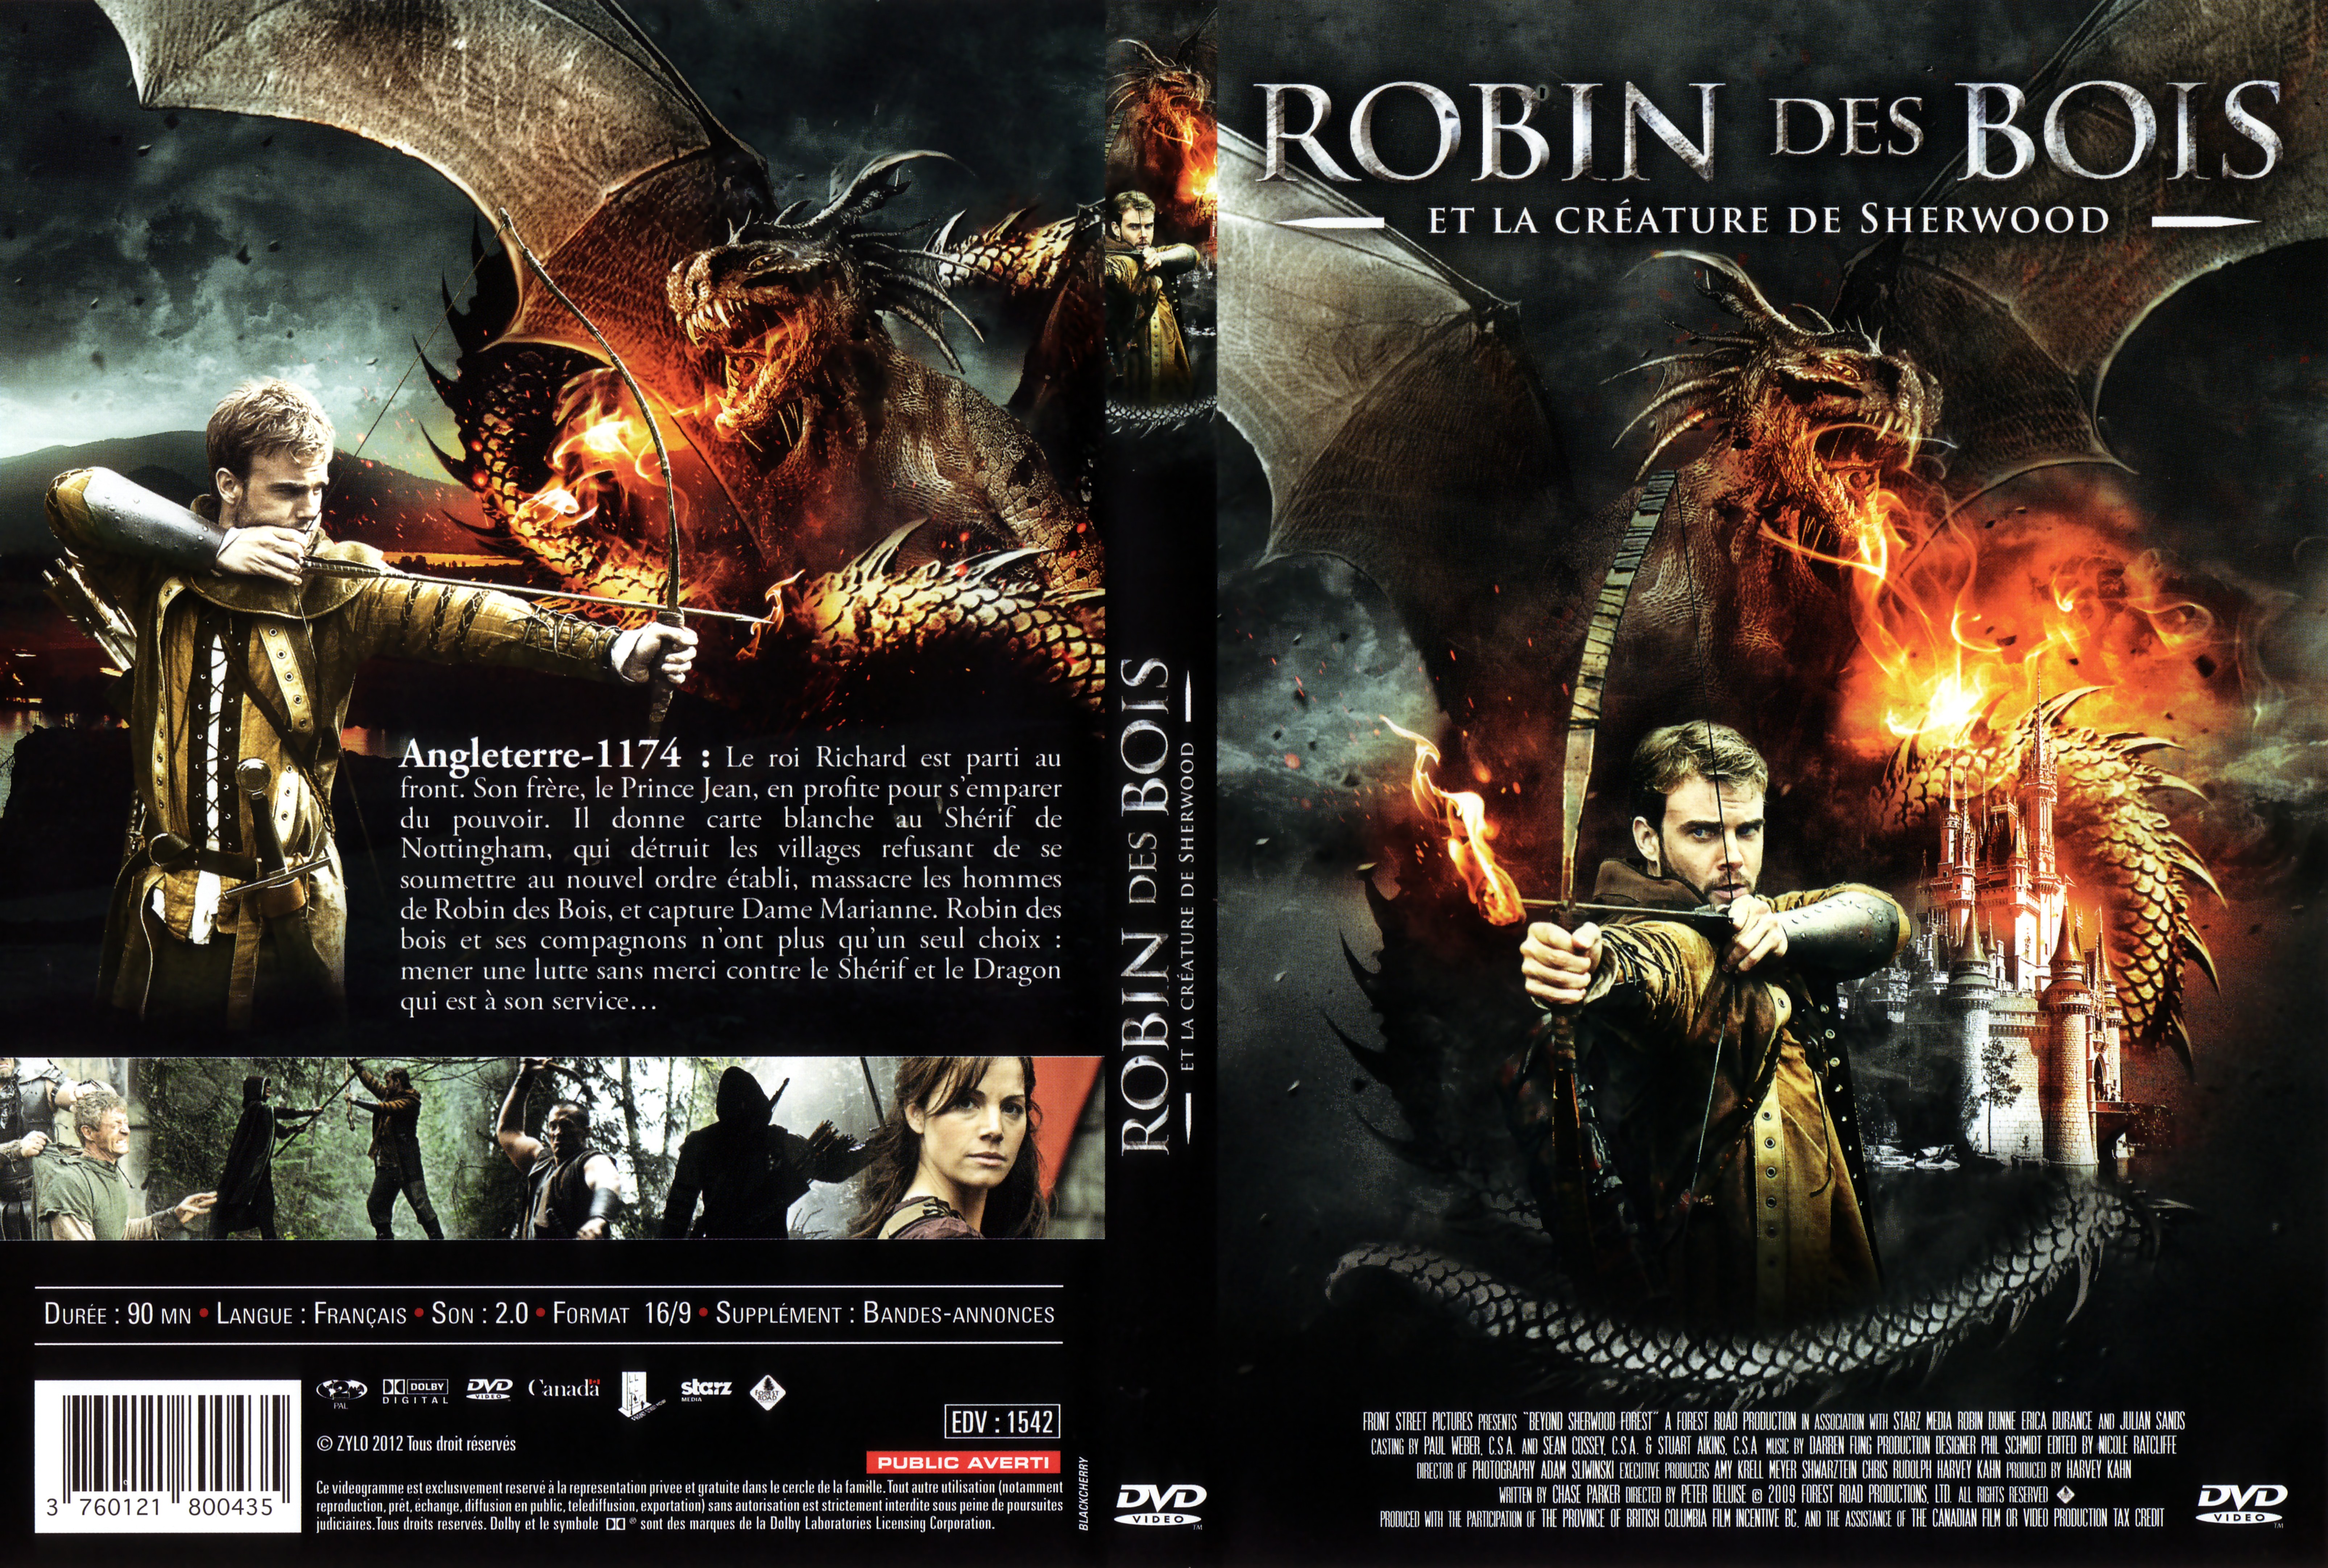 Jaquette DVD Robin Des Bois et la crature de Sherwood